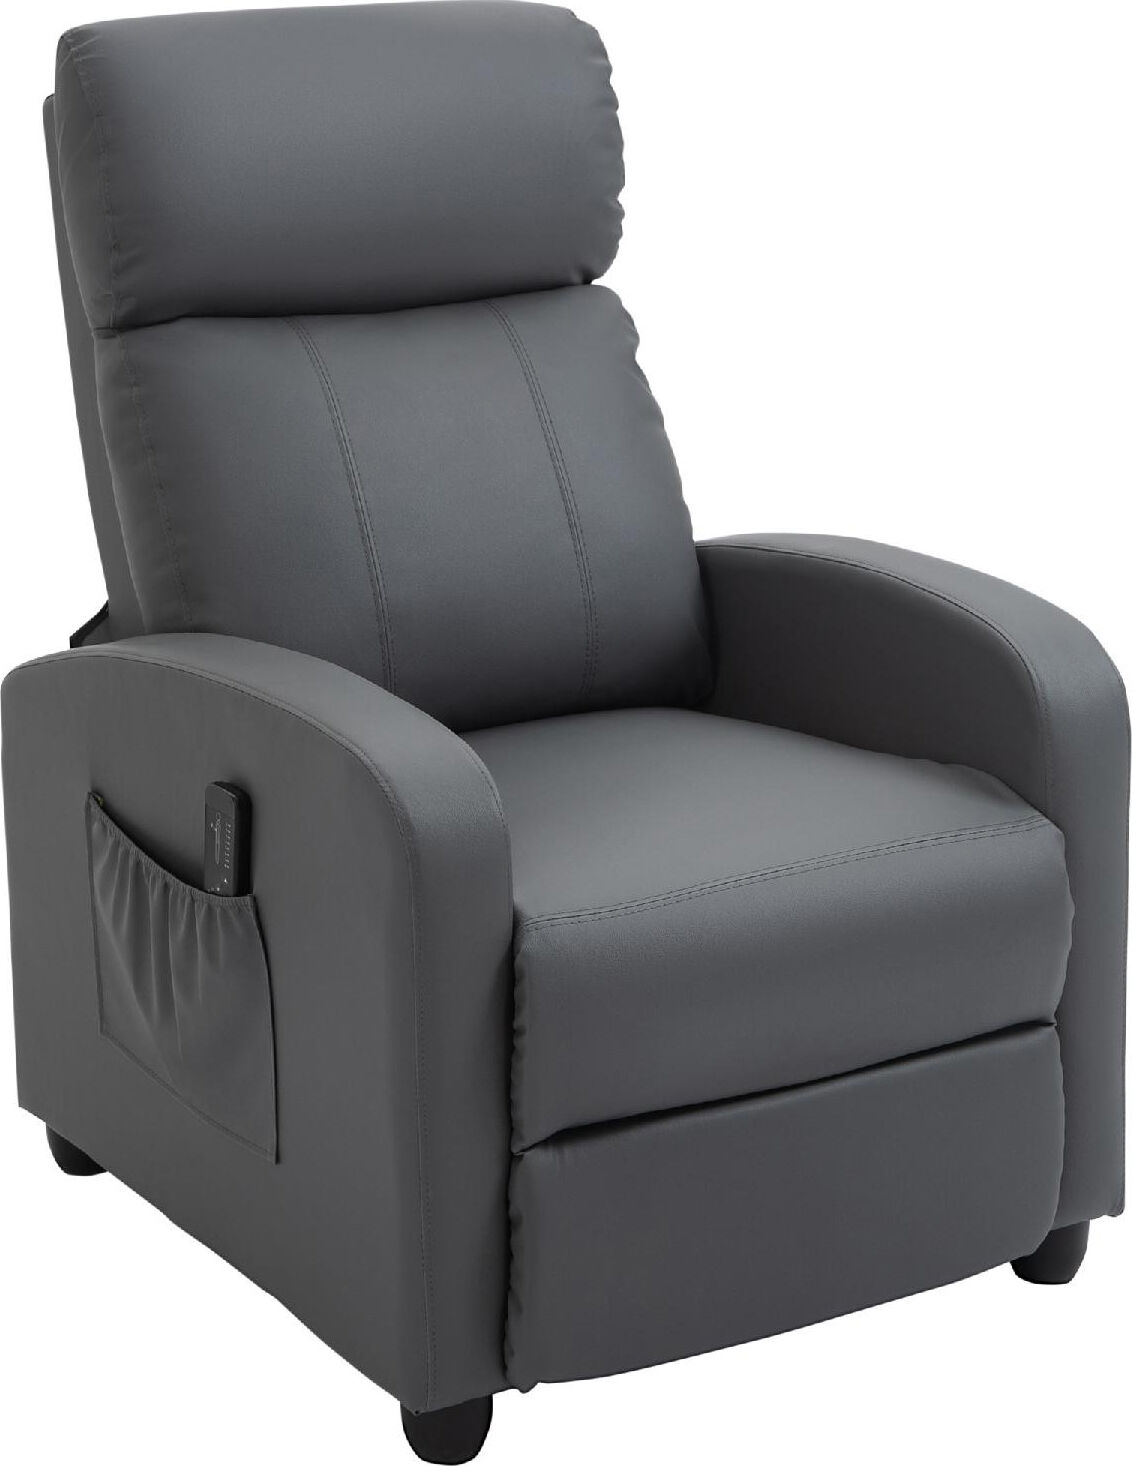 dechome 143v90gy poltrona relax reclinabile poltrona massaggiante elettrica con telecomando colore grigio - 143v90gy